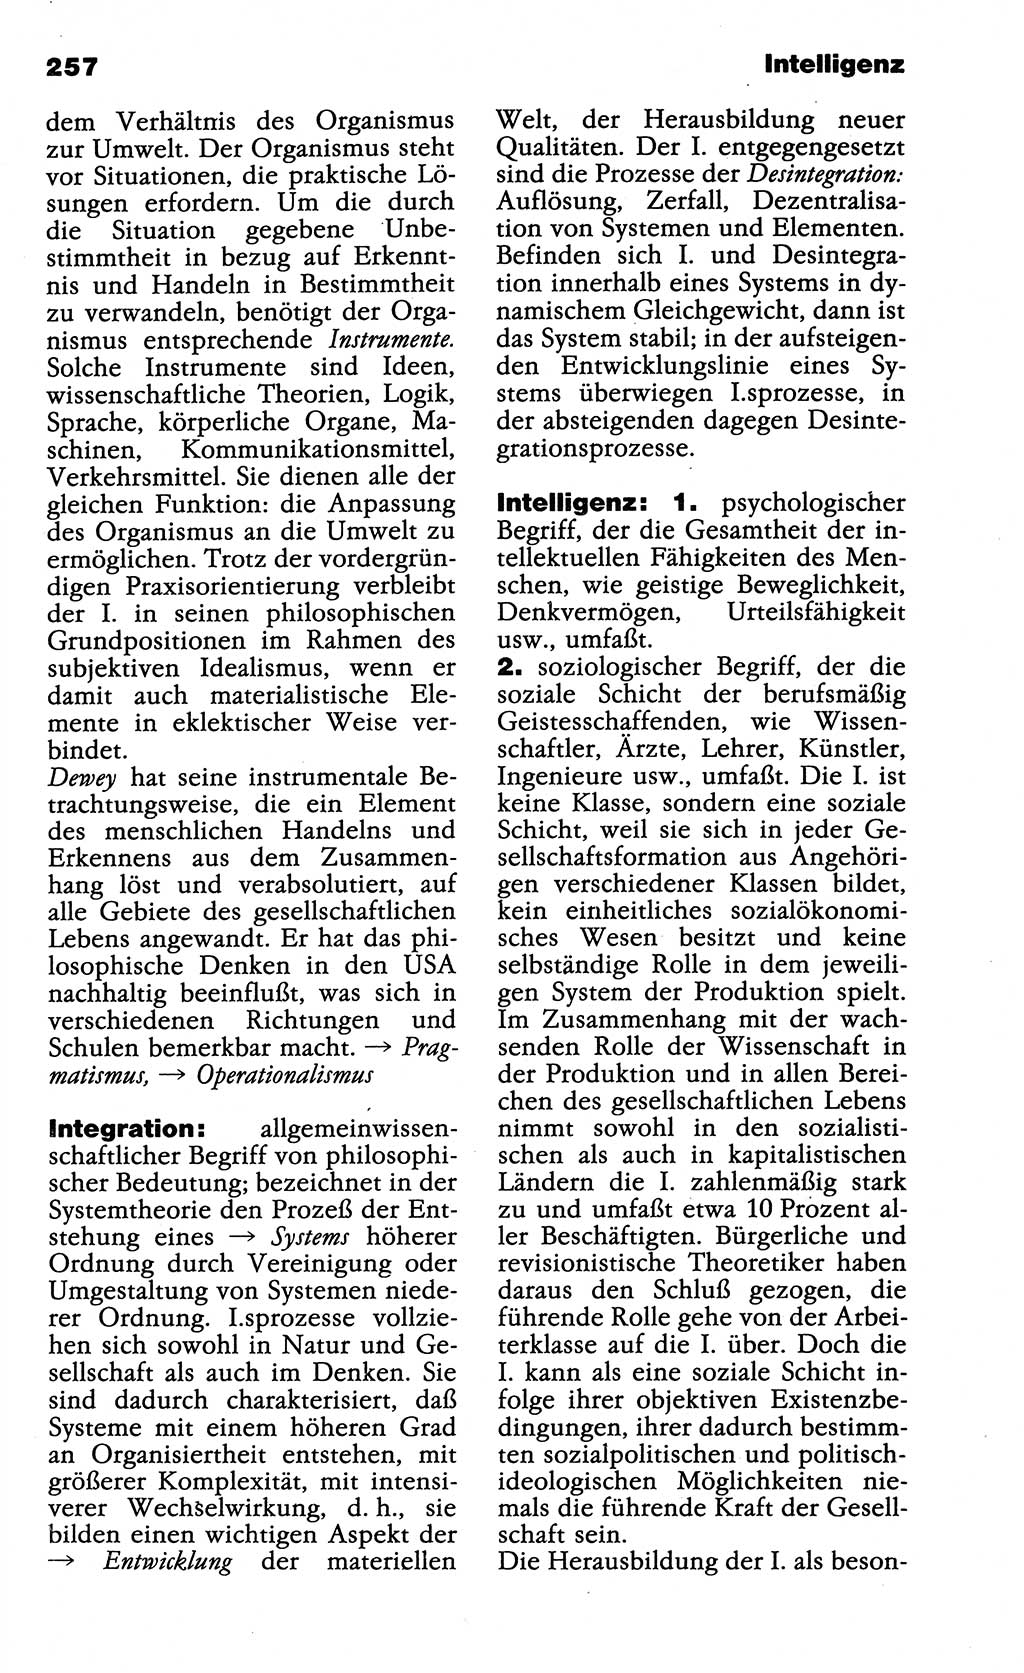 Wörterbuch der marxistisch-leninistischen Philosophie [Deutsche Demokratische Republik (DDR)] 1985, Seite 257 (Wb. ML Phil. DDR 1985, S. 257)